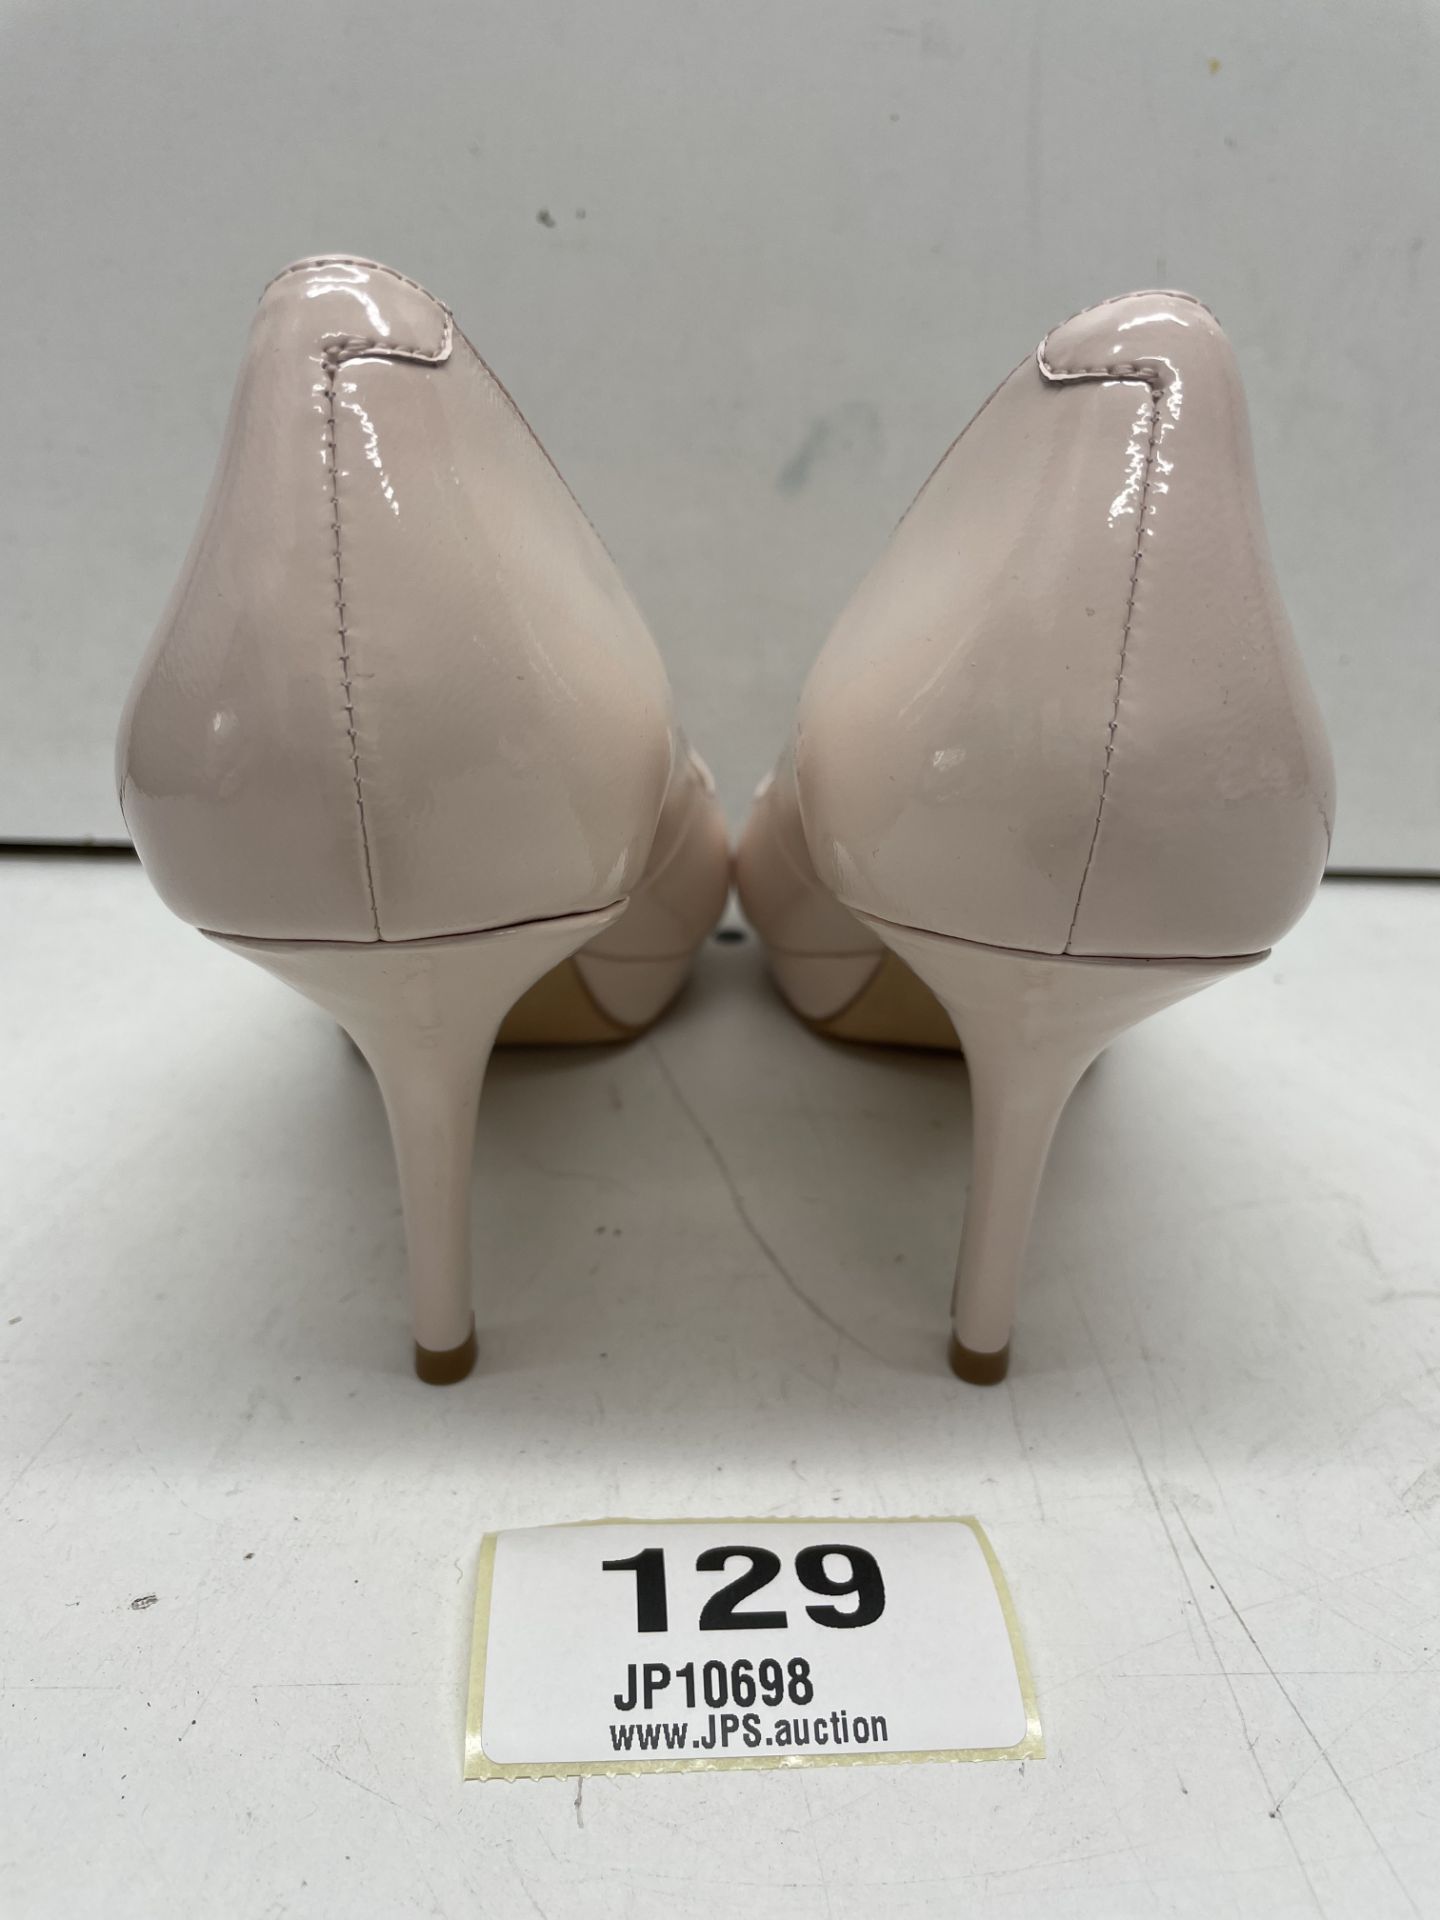 Ex-Display Lucy Choi Peep Toe Platform Heels | Eur 37 - Image 2 of 4